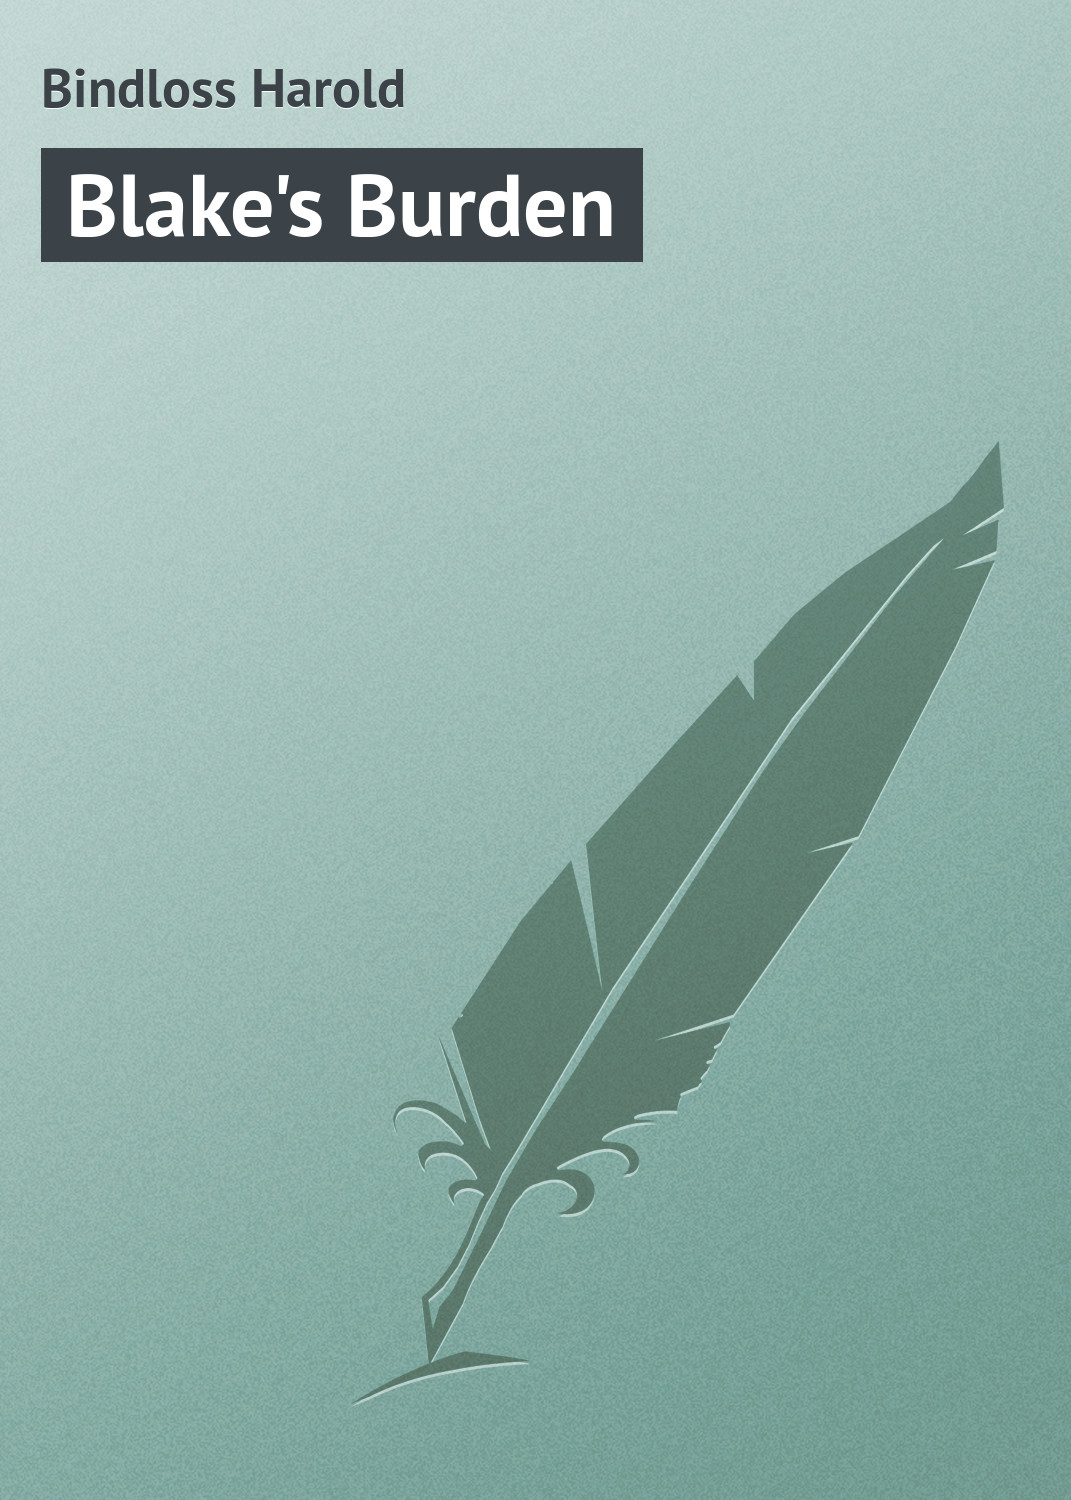 Книга Blake's Burden из серии , созданная Harold Bindloss, может относится к жанру Зарубежная классика. Стоимость электронной книги Blake's Burden с идентификатором 23164963 составляет 5.99 руб.